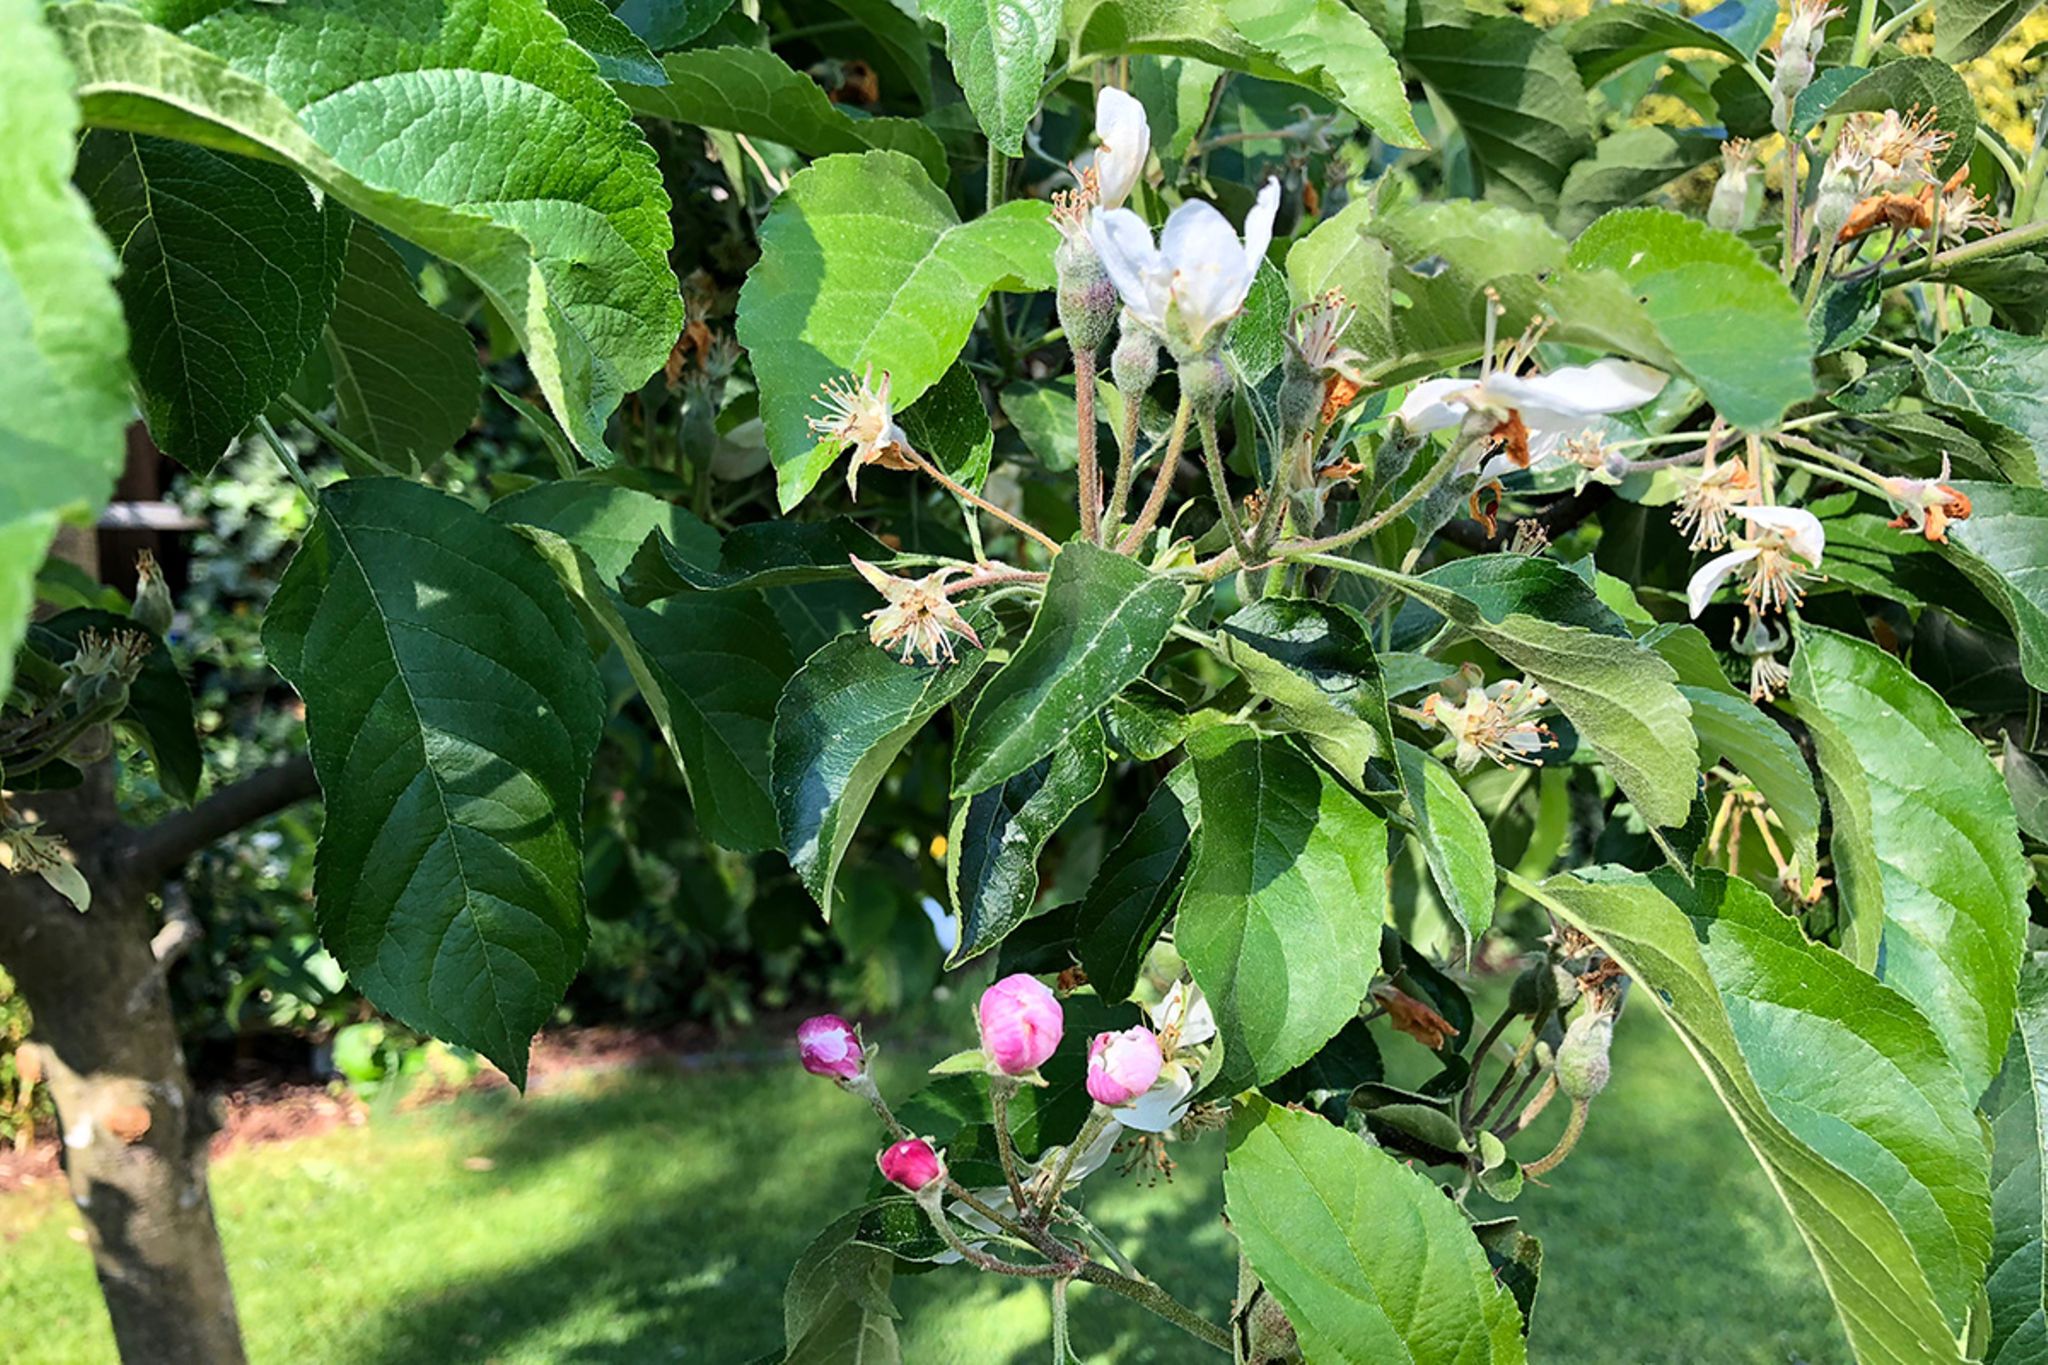 Apfelbaum kaufen: In 6 Schritten zur idealen Sorte - Mein schöner Garten